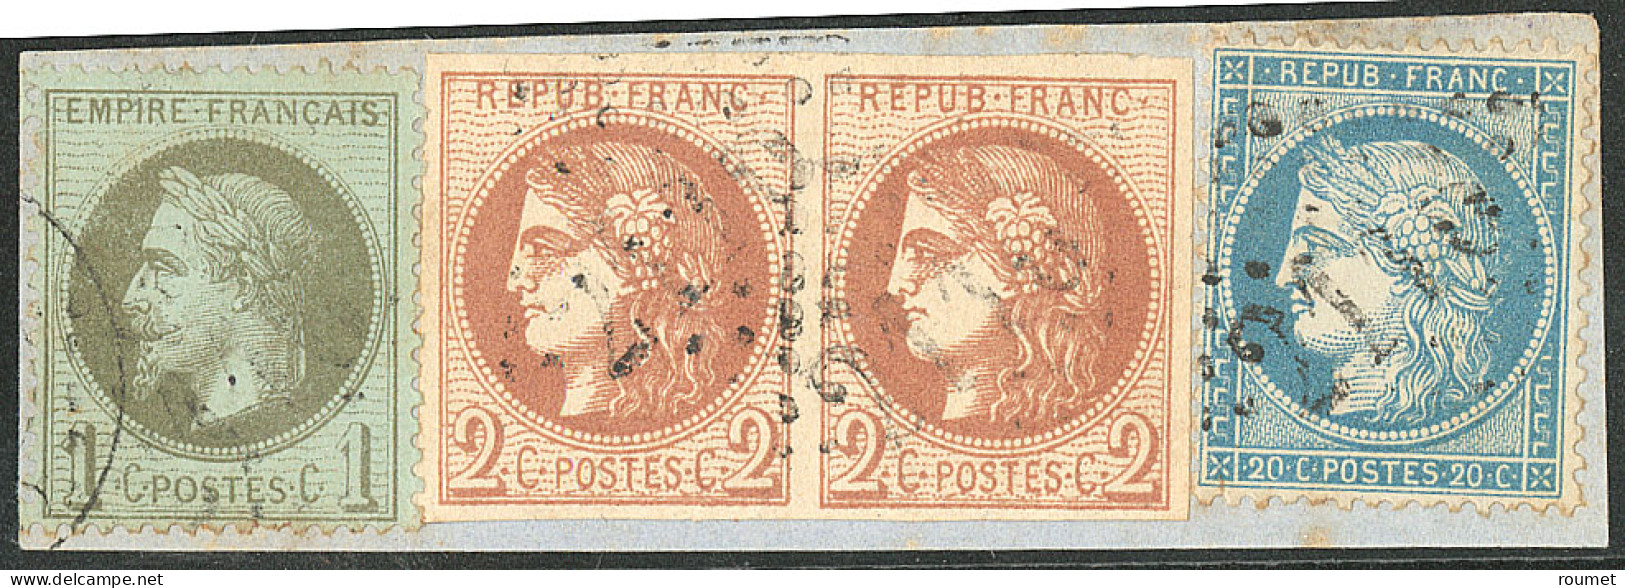 Tricolore. Nos 40B Brun-rouge Paire + 25 + 37, Sur Petit Fragment De Lettre. - TB - 1870 Bordeaux Printing